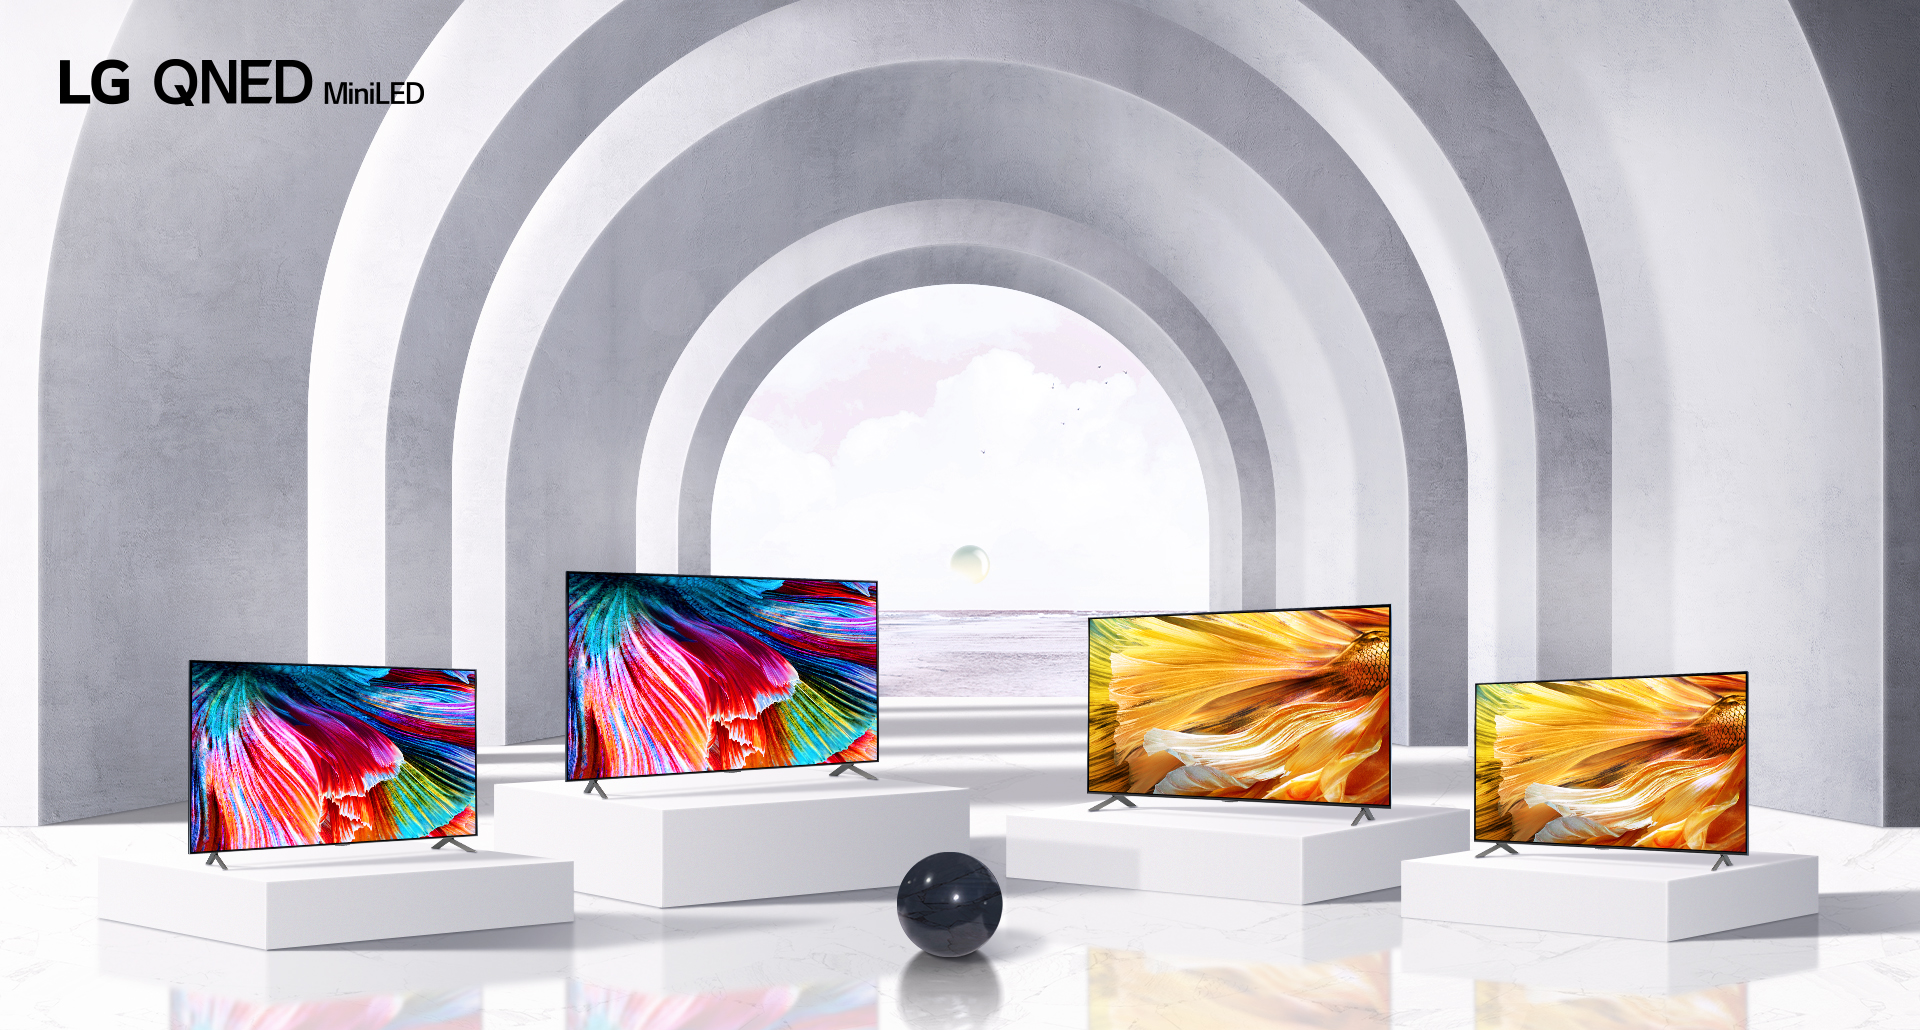 แอลจีเผยนวัตกรรมทีวีและจอมอนิเตอร์ใหม่สุดล้ำในงาน CES 2021